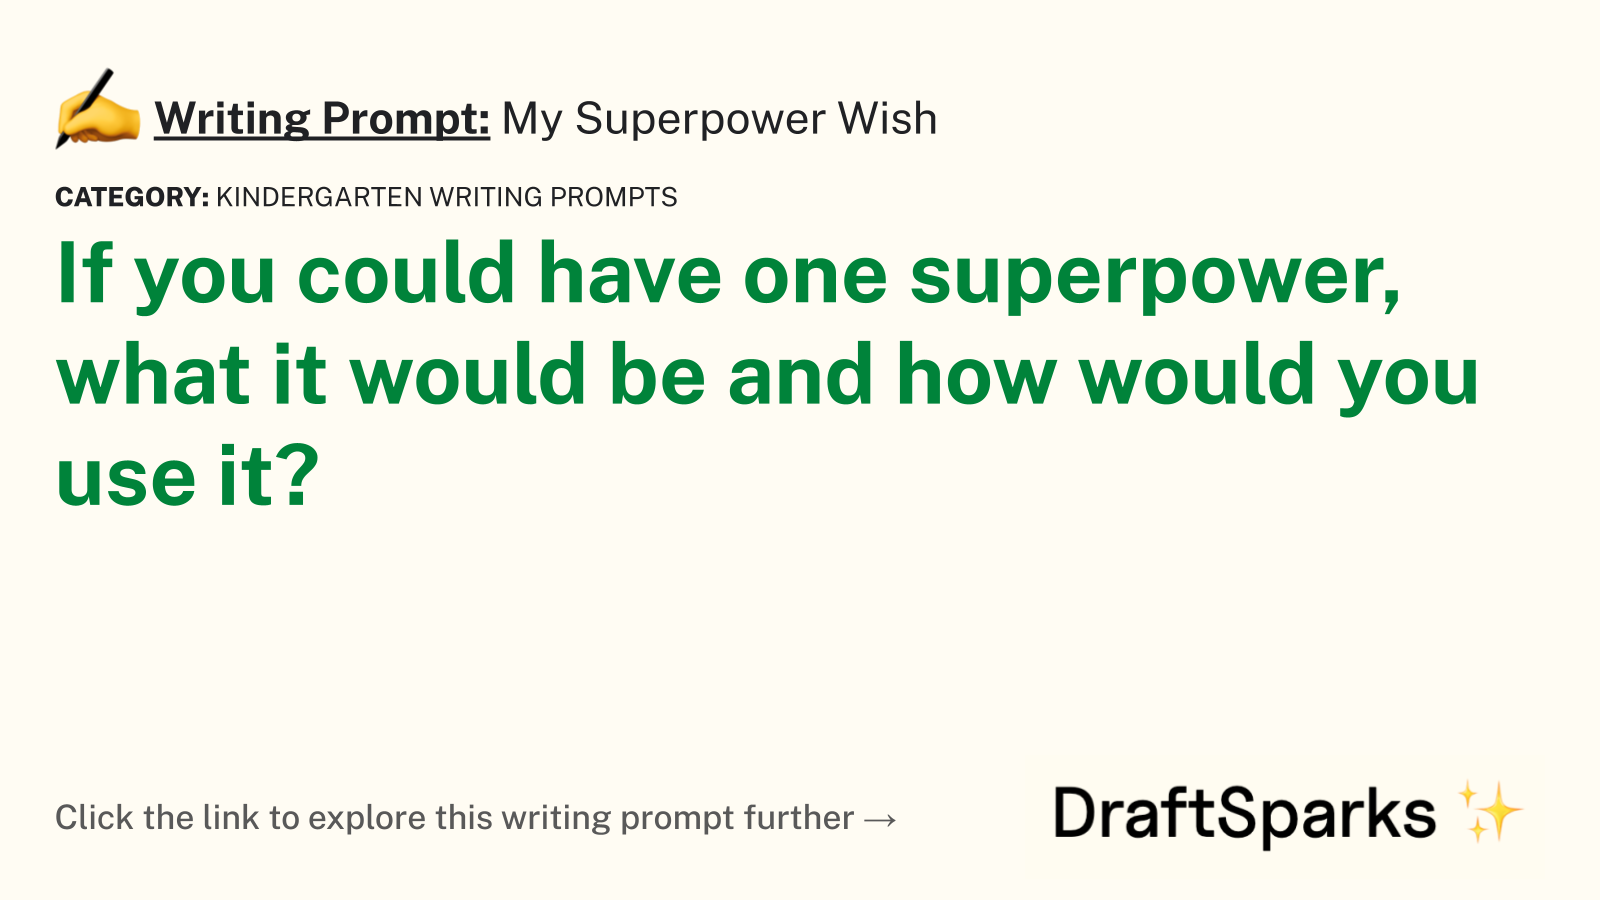 My Superpower Wish